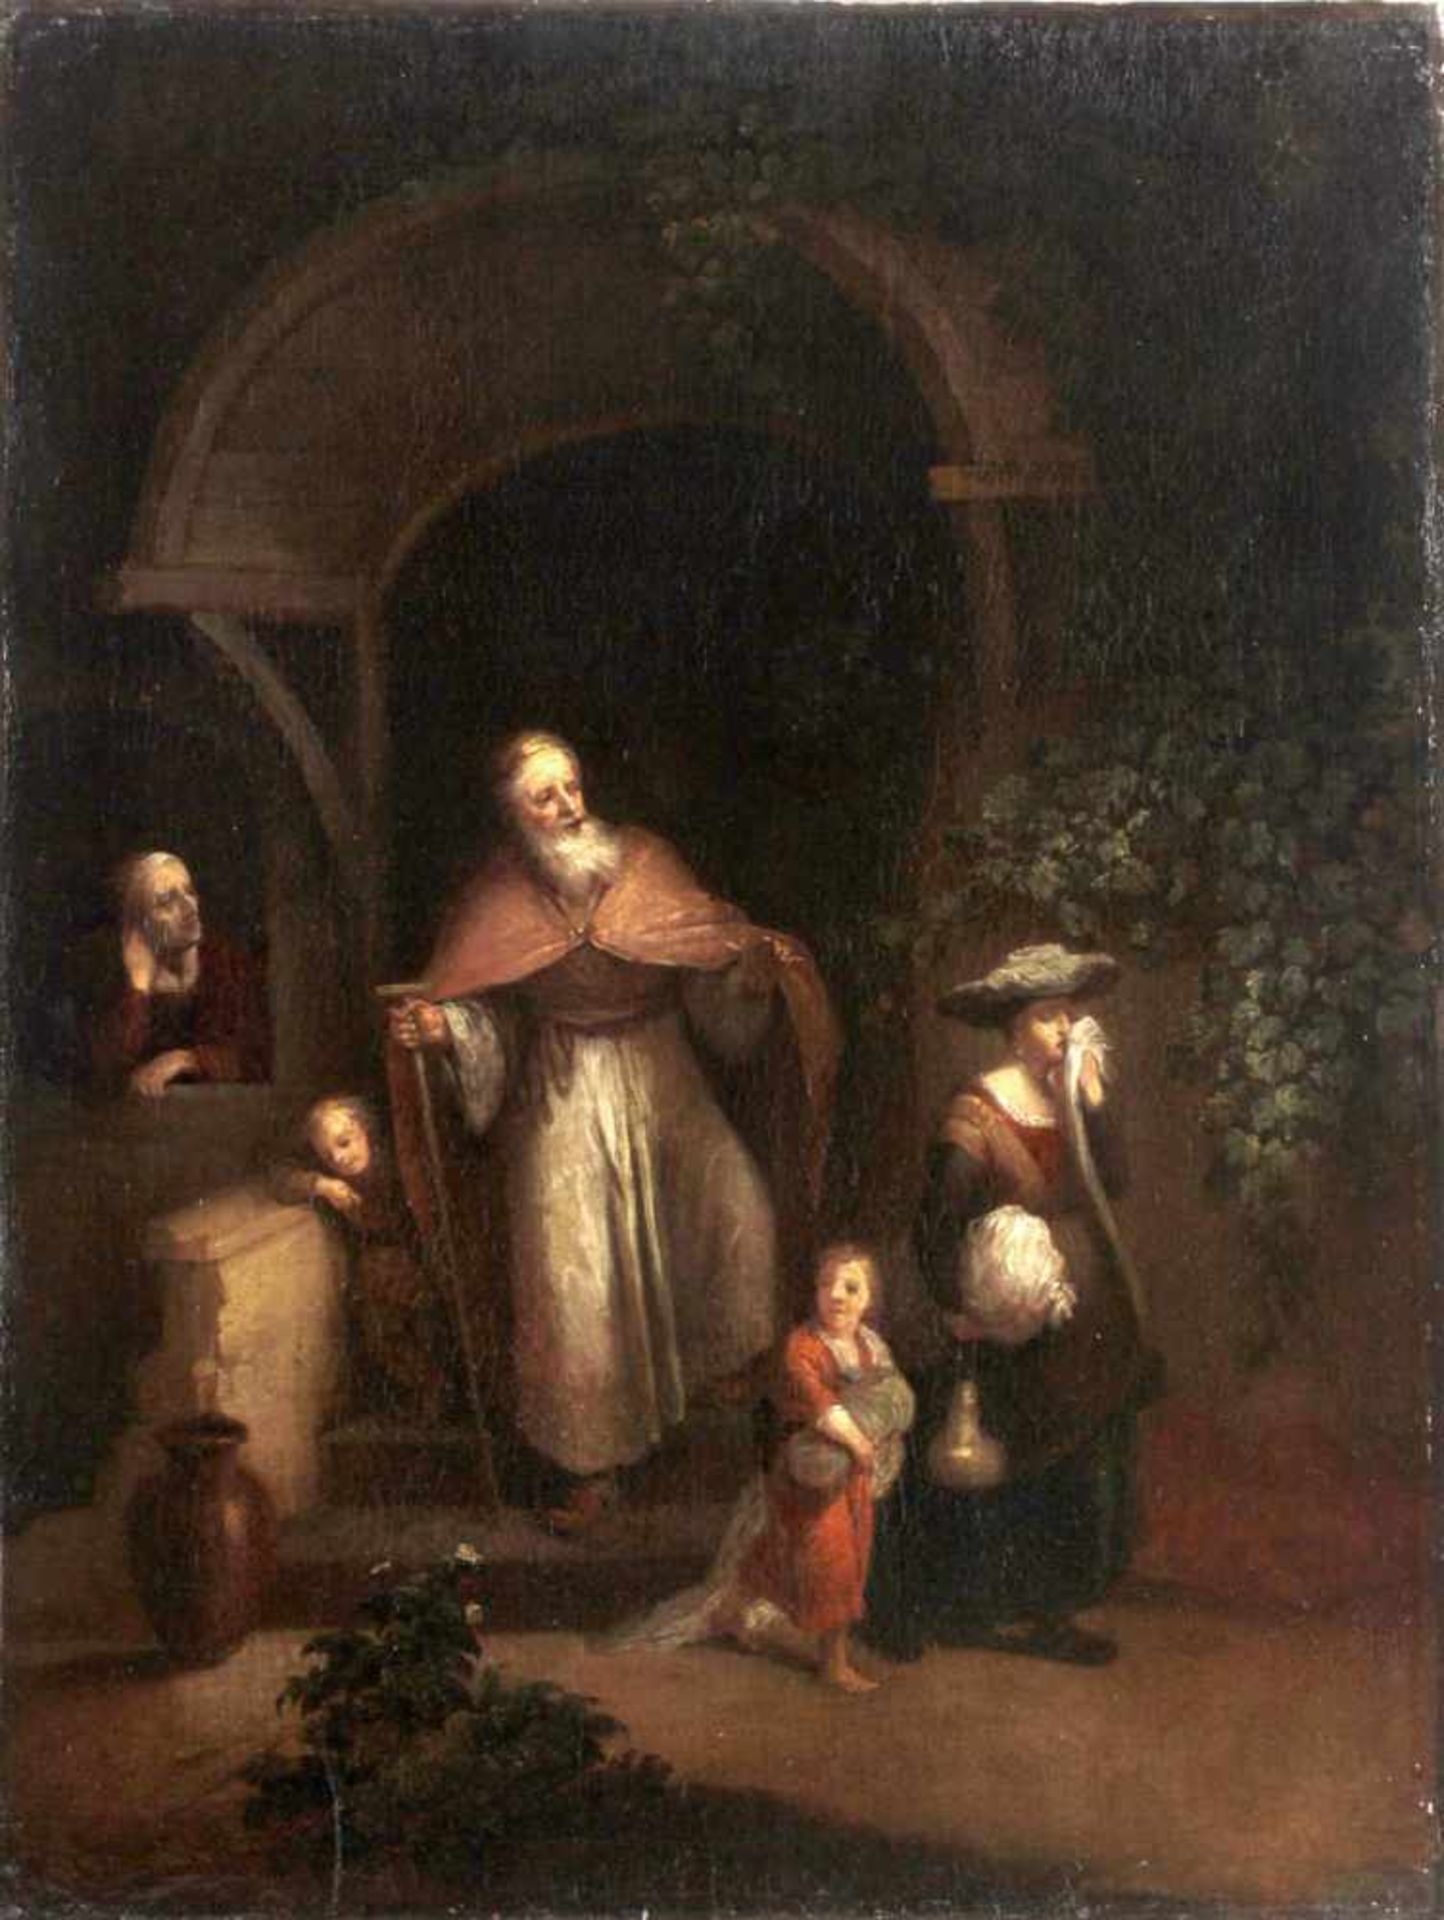 Anonymer Maler, wohl deutsch, 18. Jh."Verstoßung der Hagar" durch Abraham, im Hintergrund seine Frau